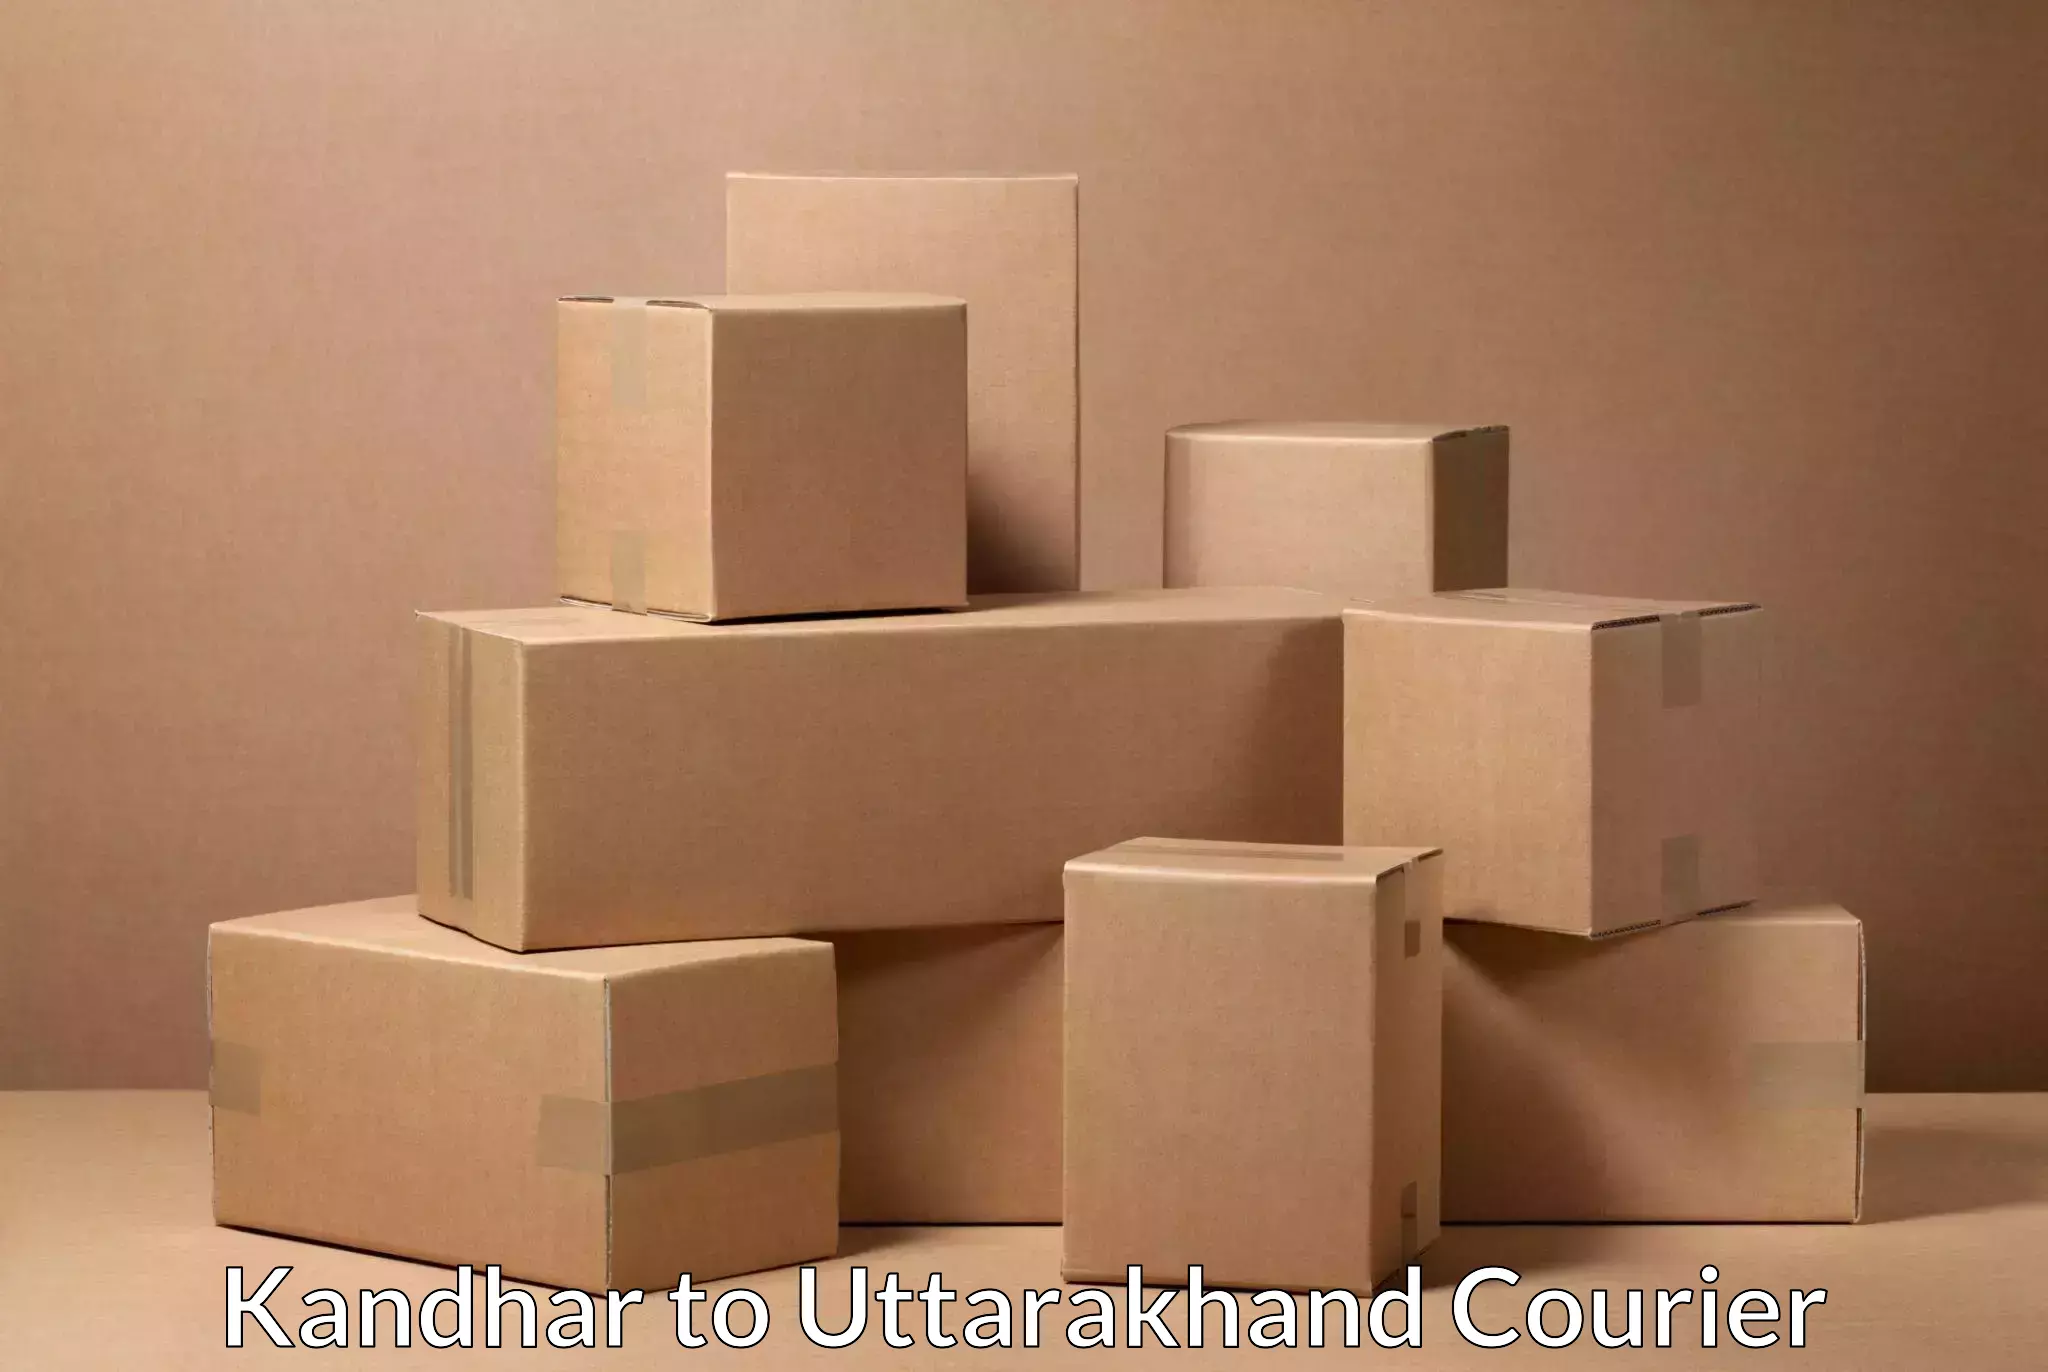 Individual parcel service Kandhar to Pauri